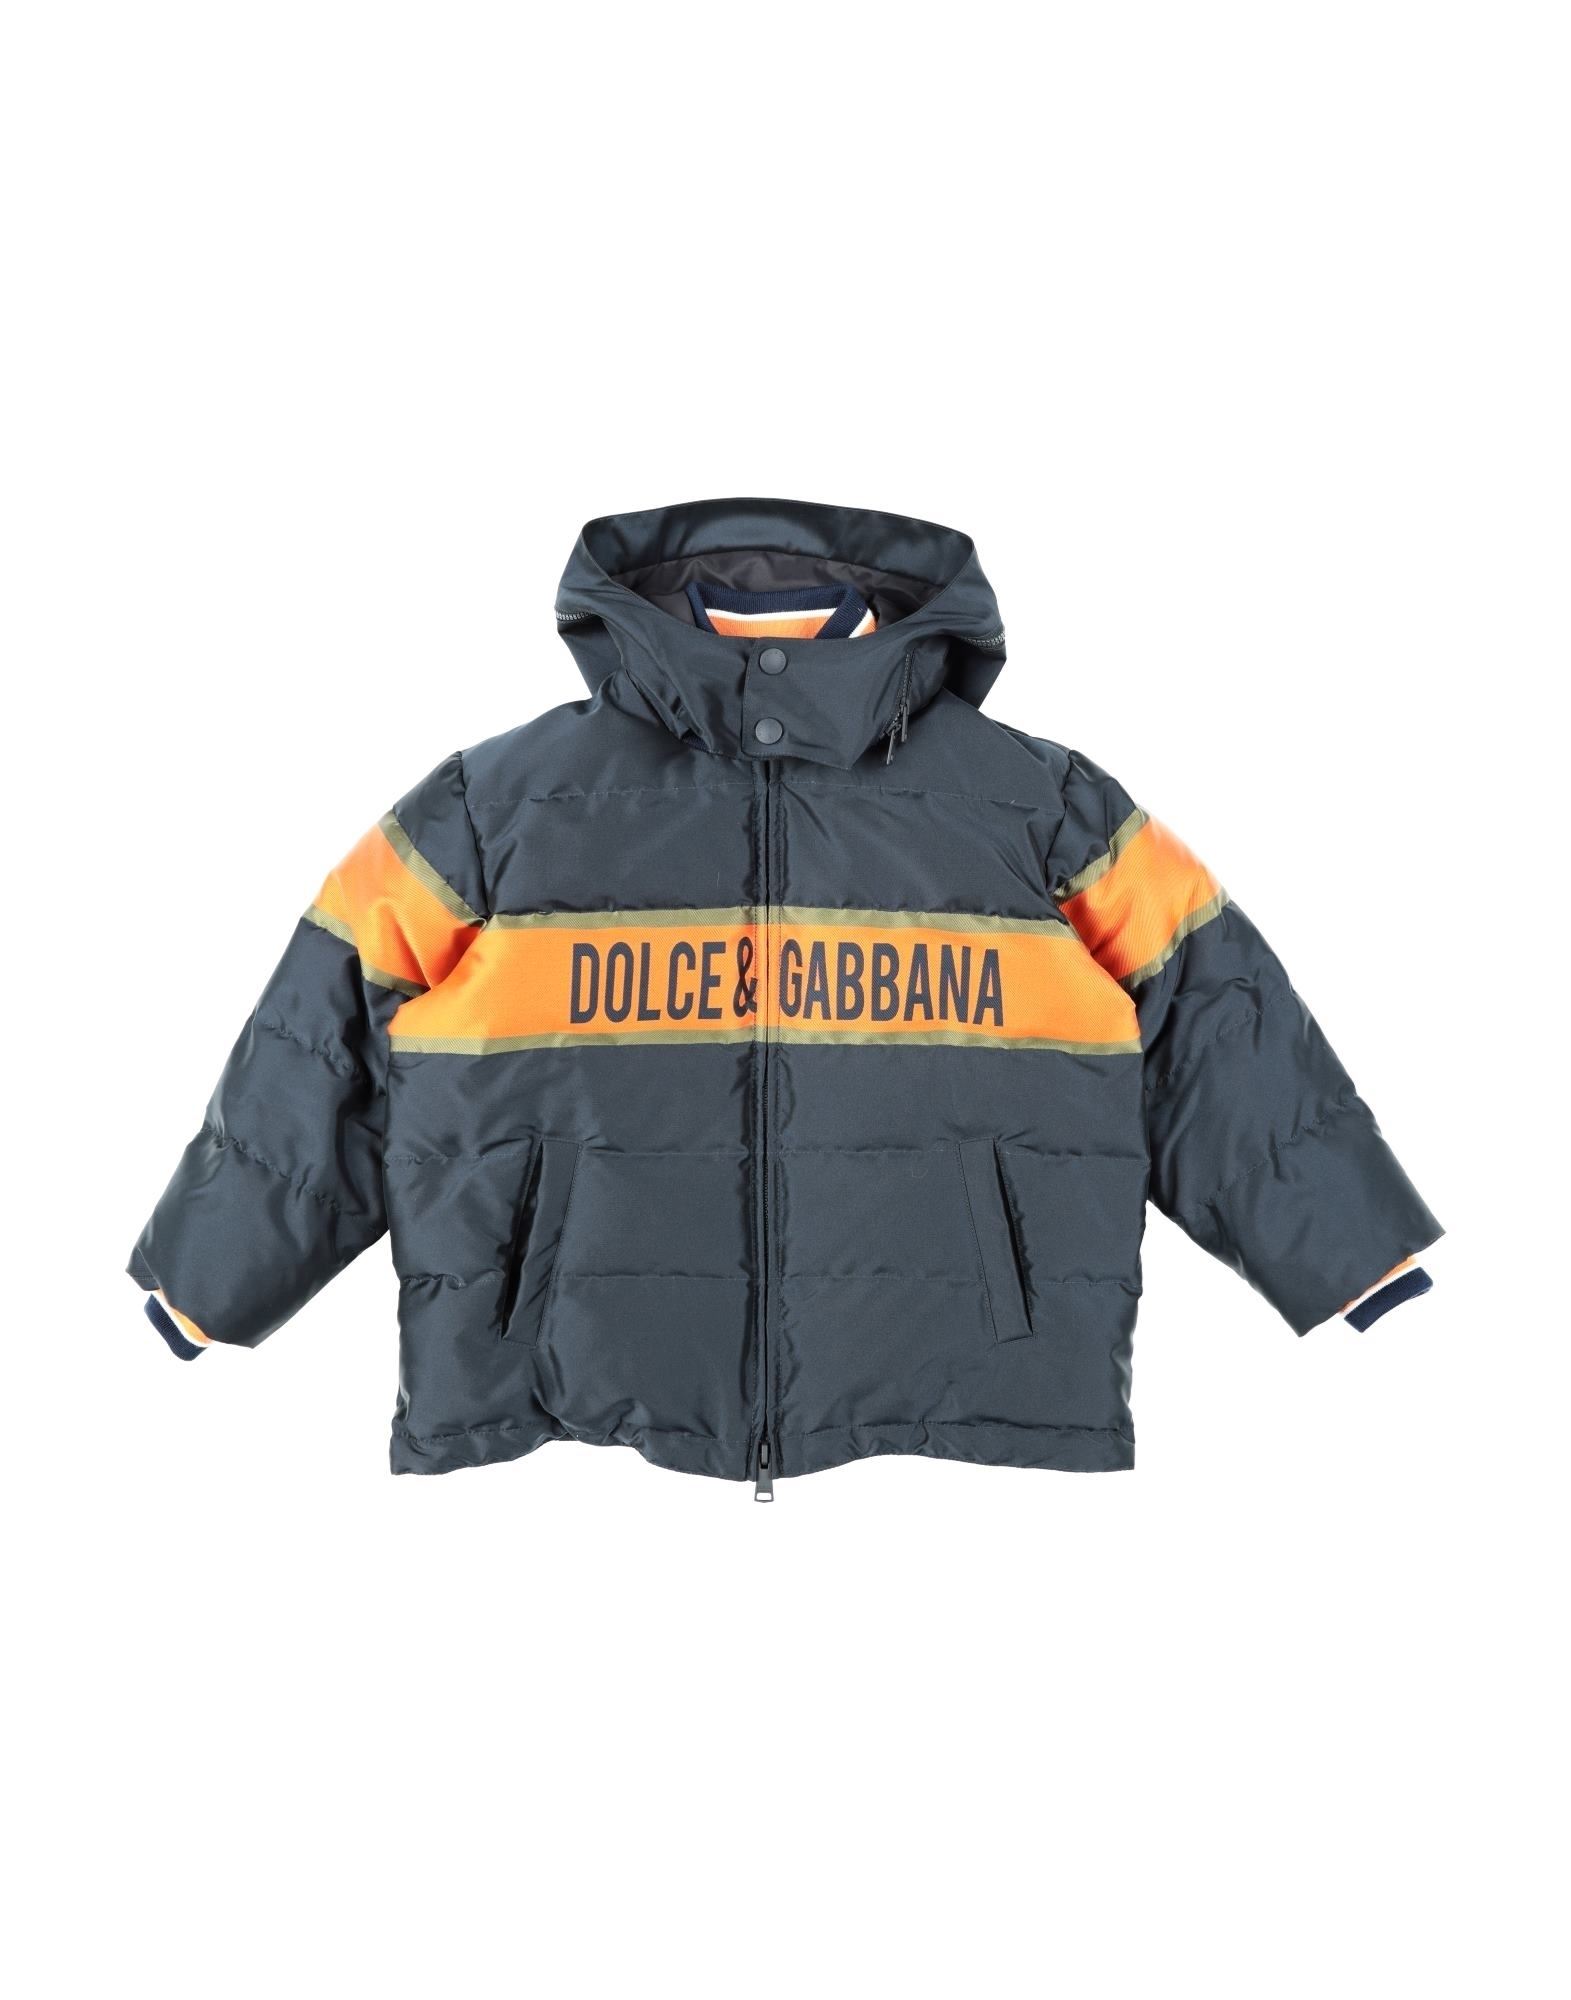 Dolce & Gabbana Kids' Down Jackets In Dark Blue